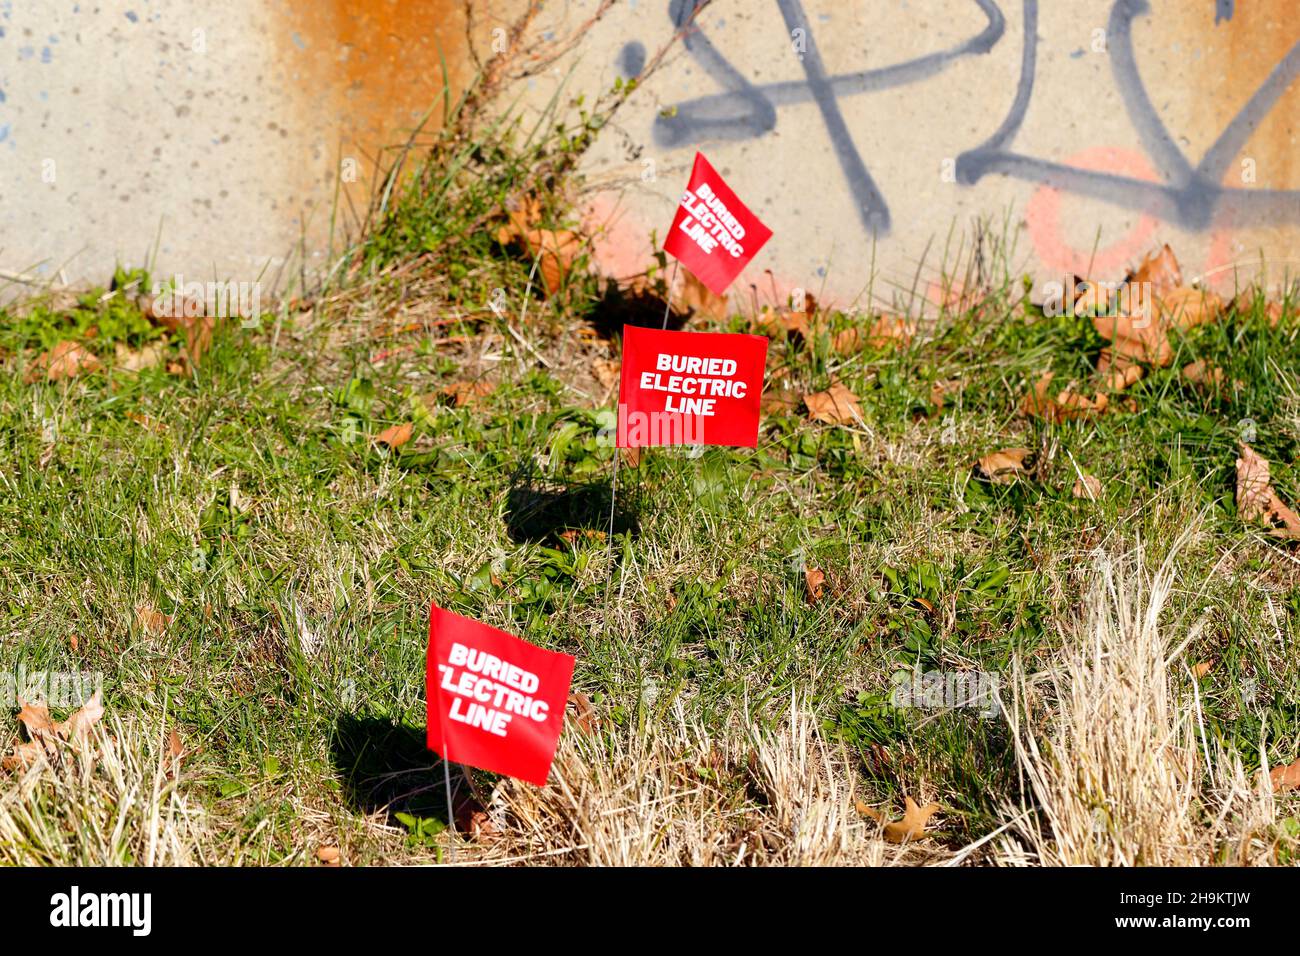 Buried Electric Line markiert Flaggen im Gras, die den Standort einer vergrabenen unterirdischen Stromleitung markieren Stockfoto